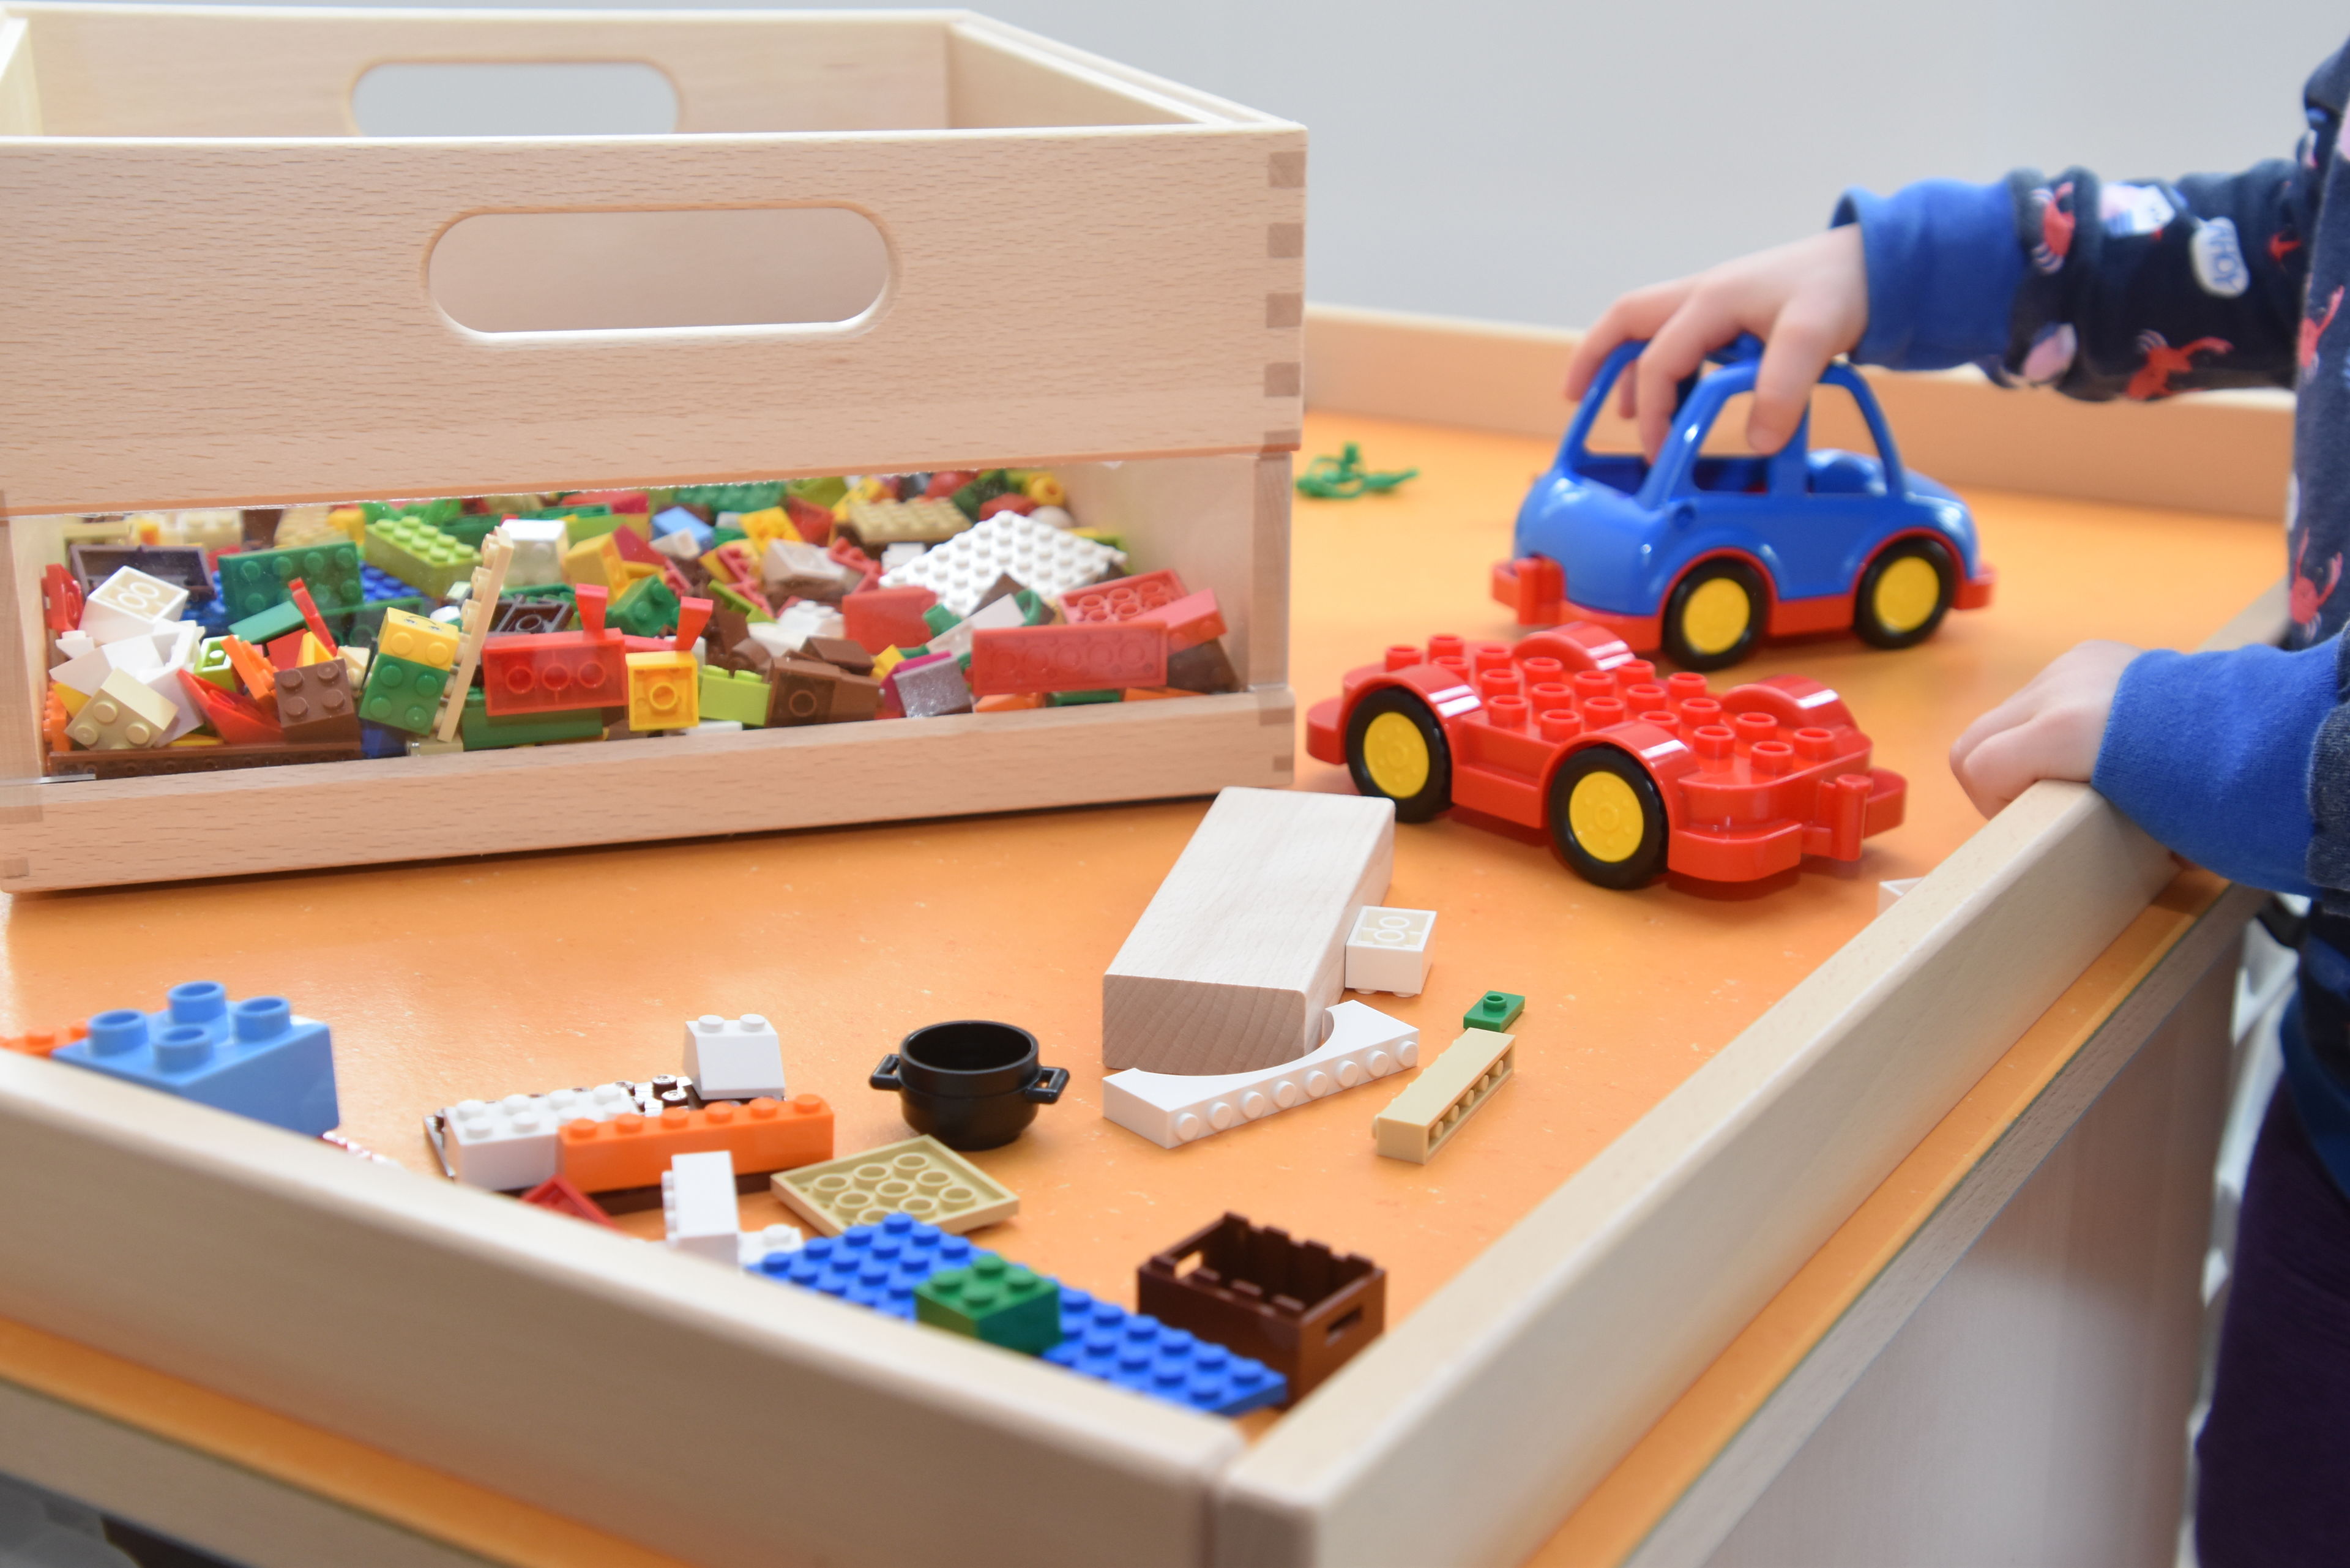 Spieletisch mit Lego und kleines Auto. Eine Kinderhand schiebt das kleine blaue Auto.